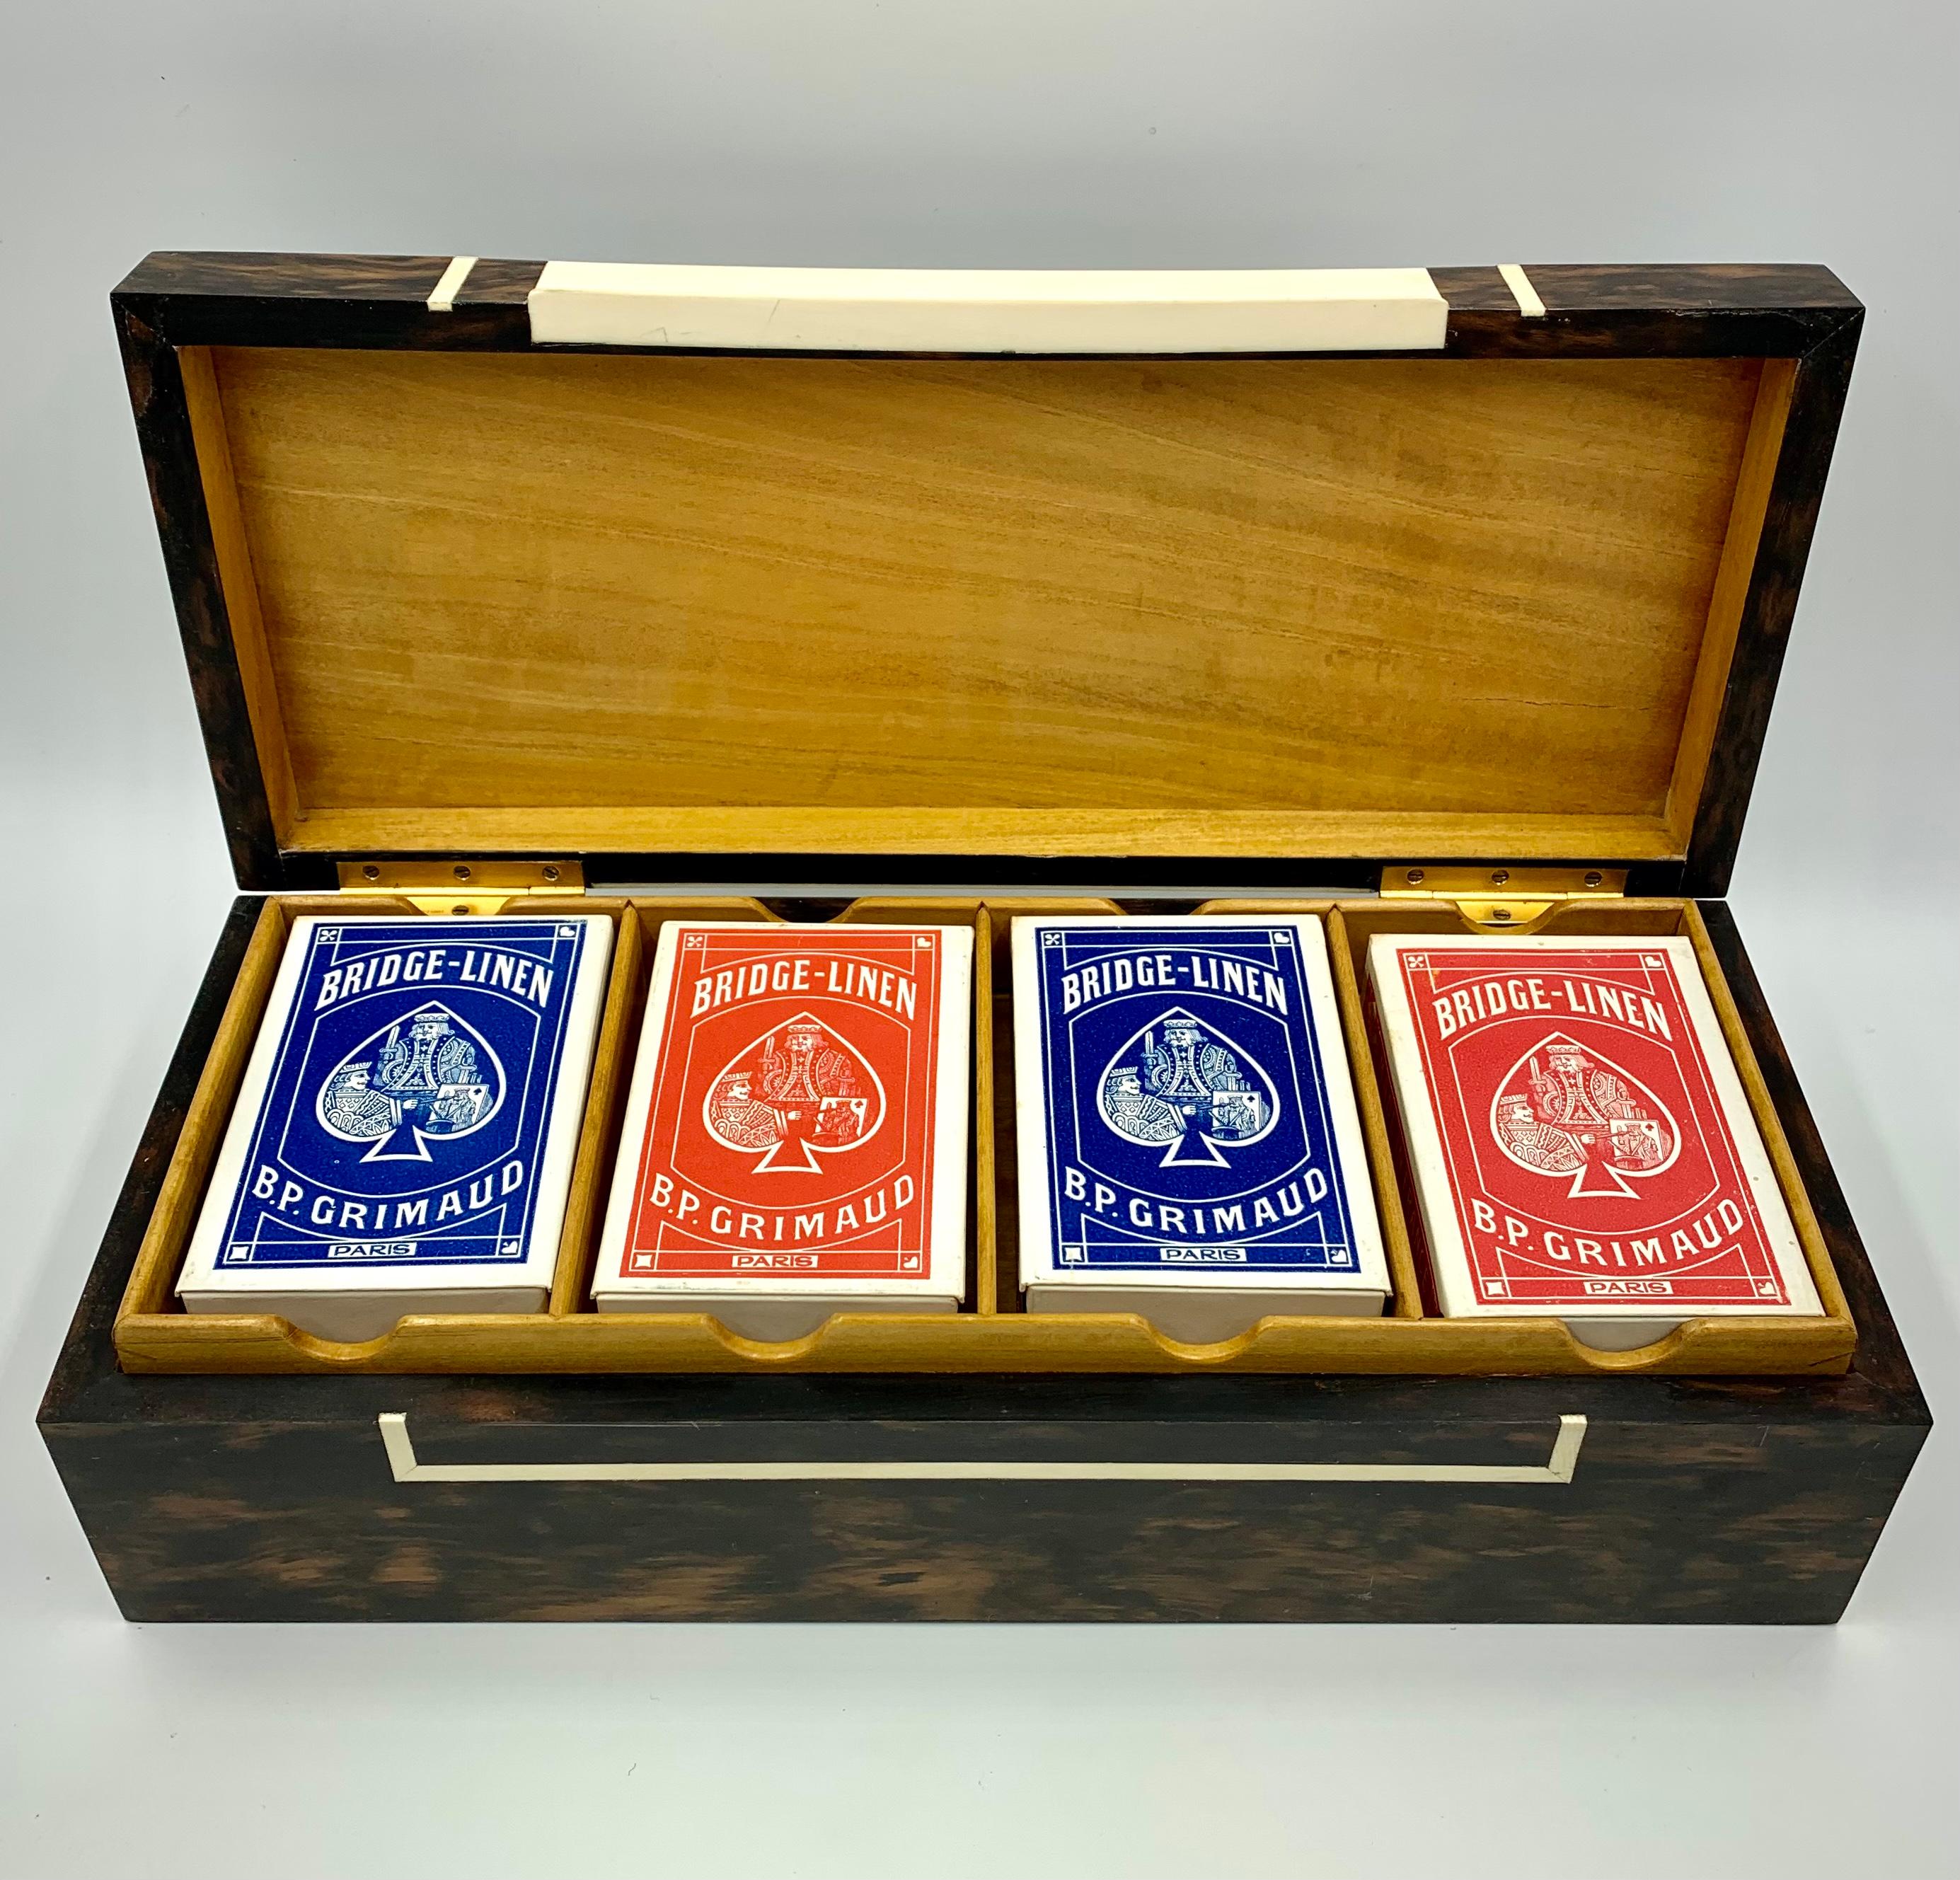 Eine fabelhafte Vintage-Spielschachtel des angesehenen Londoner Luxusgüterherstellers Dunhill. Signiert Alfred Dunhill Paris fab. Anglaise, diese Spielschachtel aus exotischem Holz ist mit einem herausnehmbaren Fach für vier Kartendecks und einem